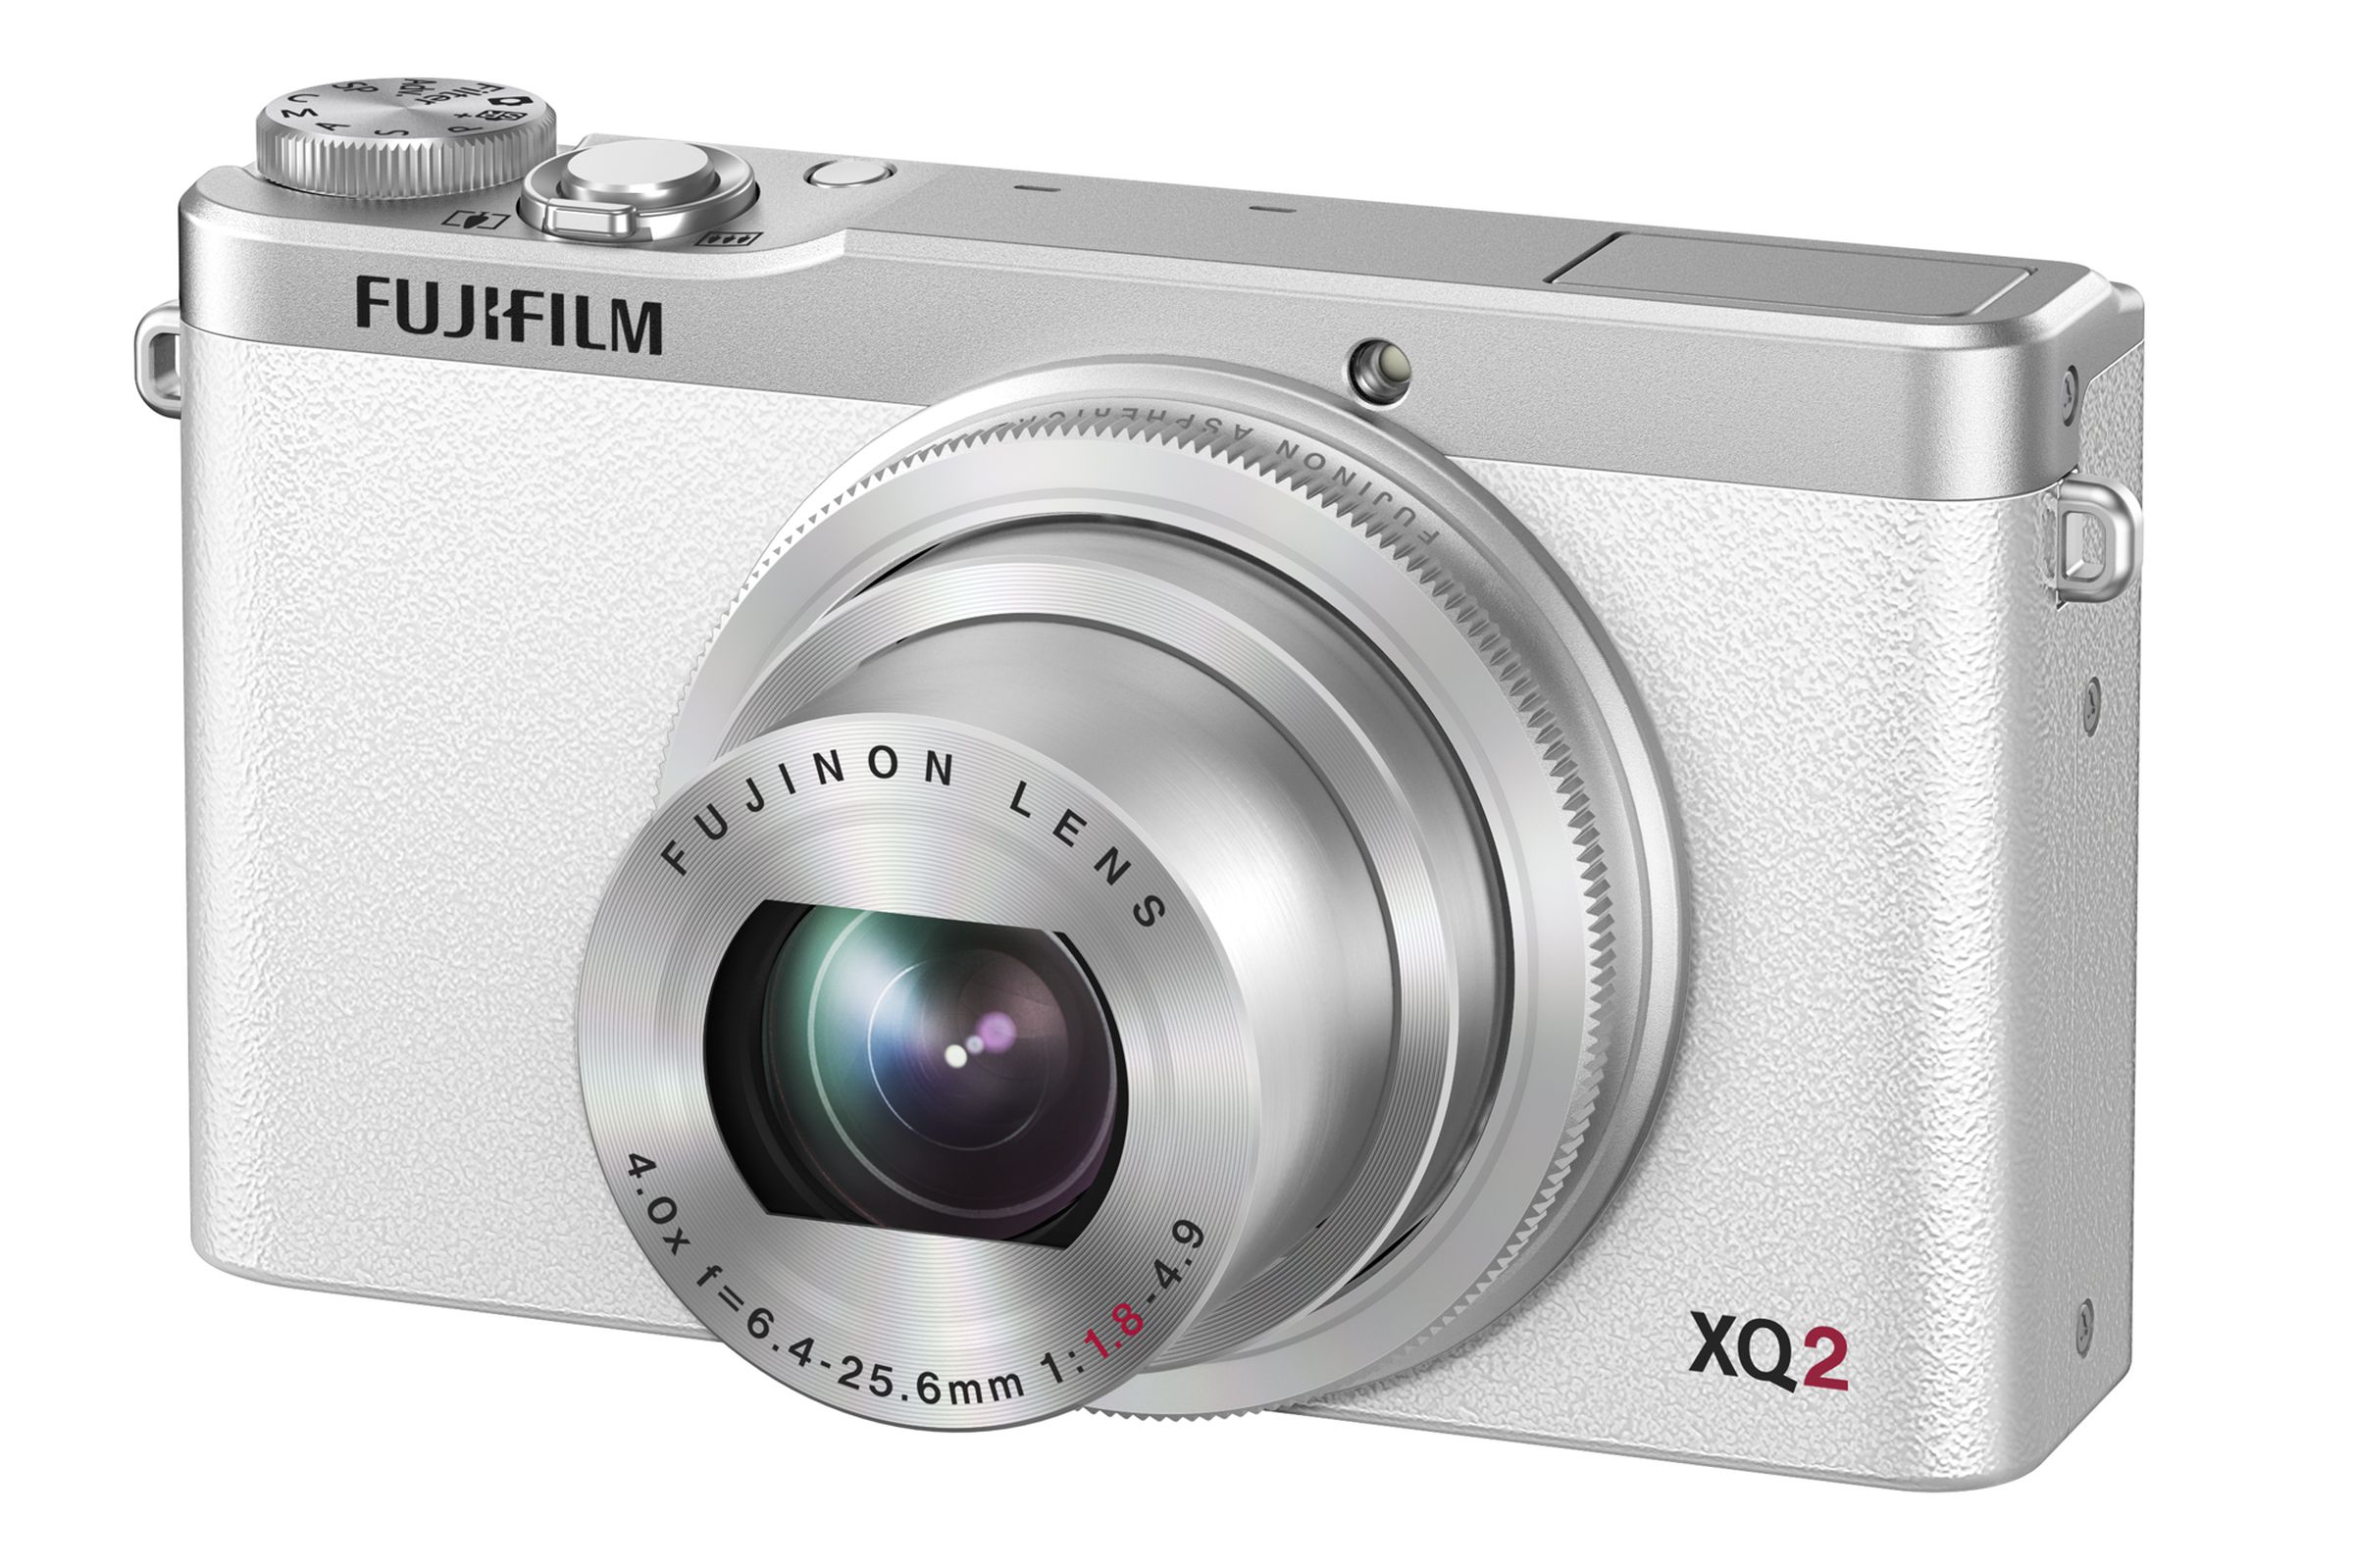 Fujifilm XQ2 images